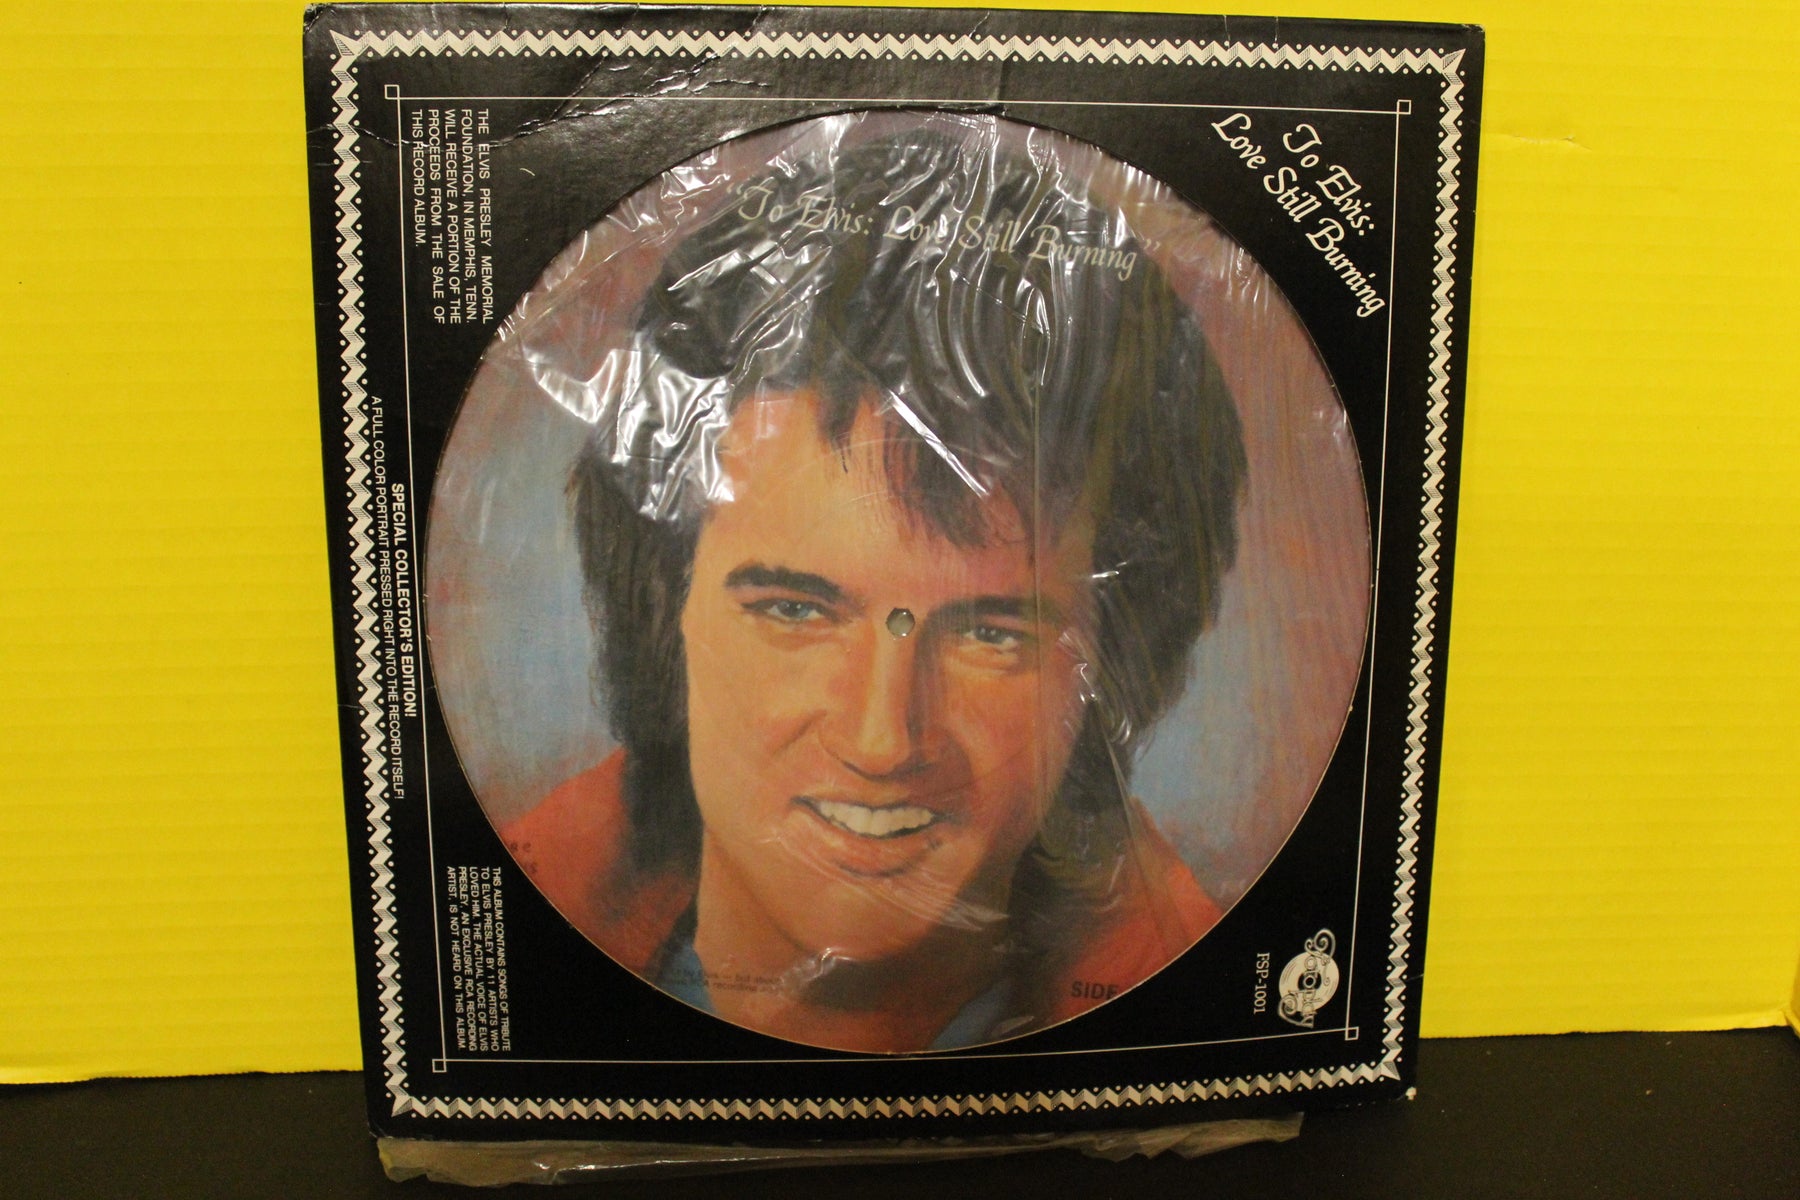 To Elvis: Love Still Burning Vinyl Record